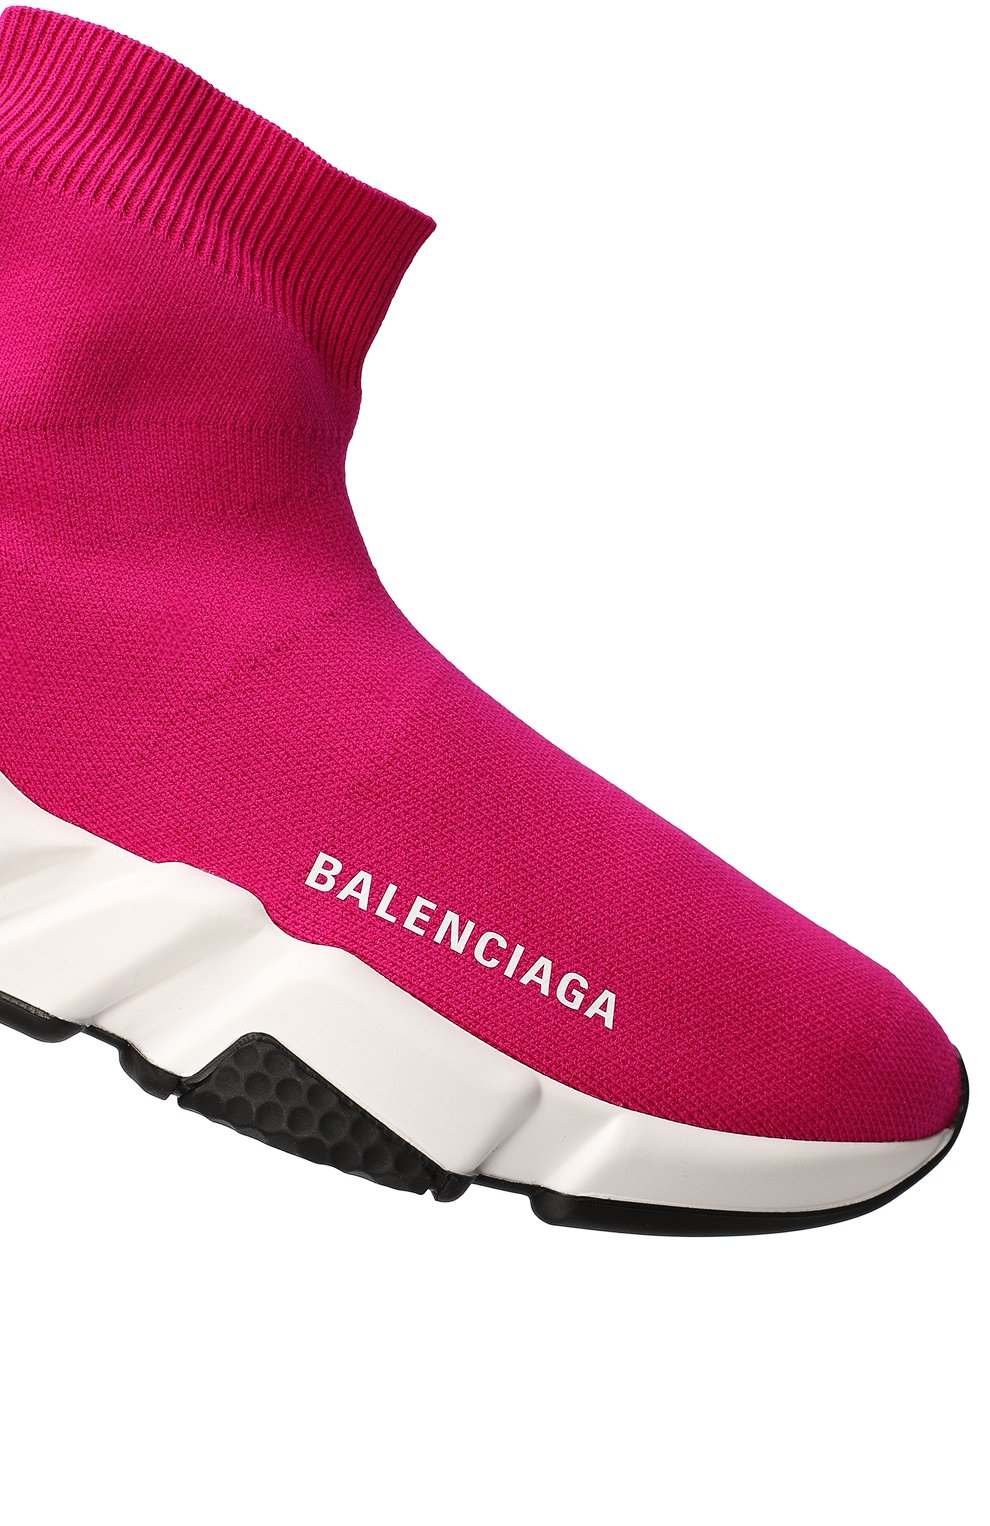 Кроссовки Speed Trainer | Balenciaga | Розовый - 8